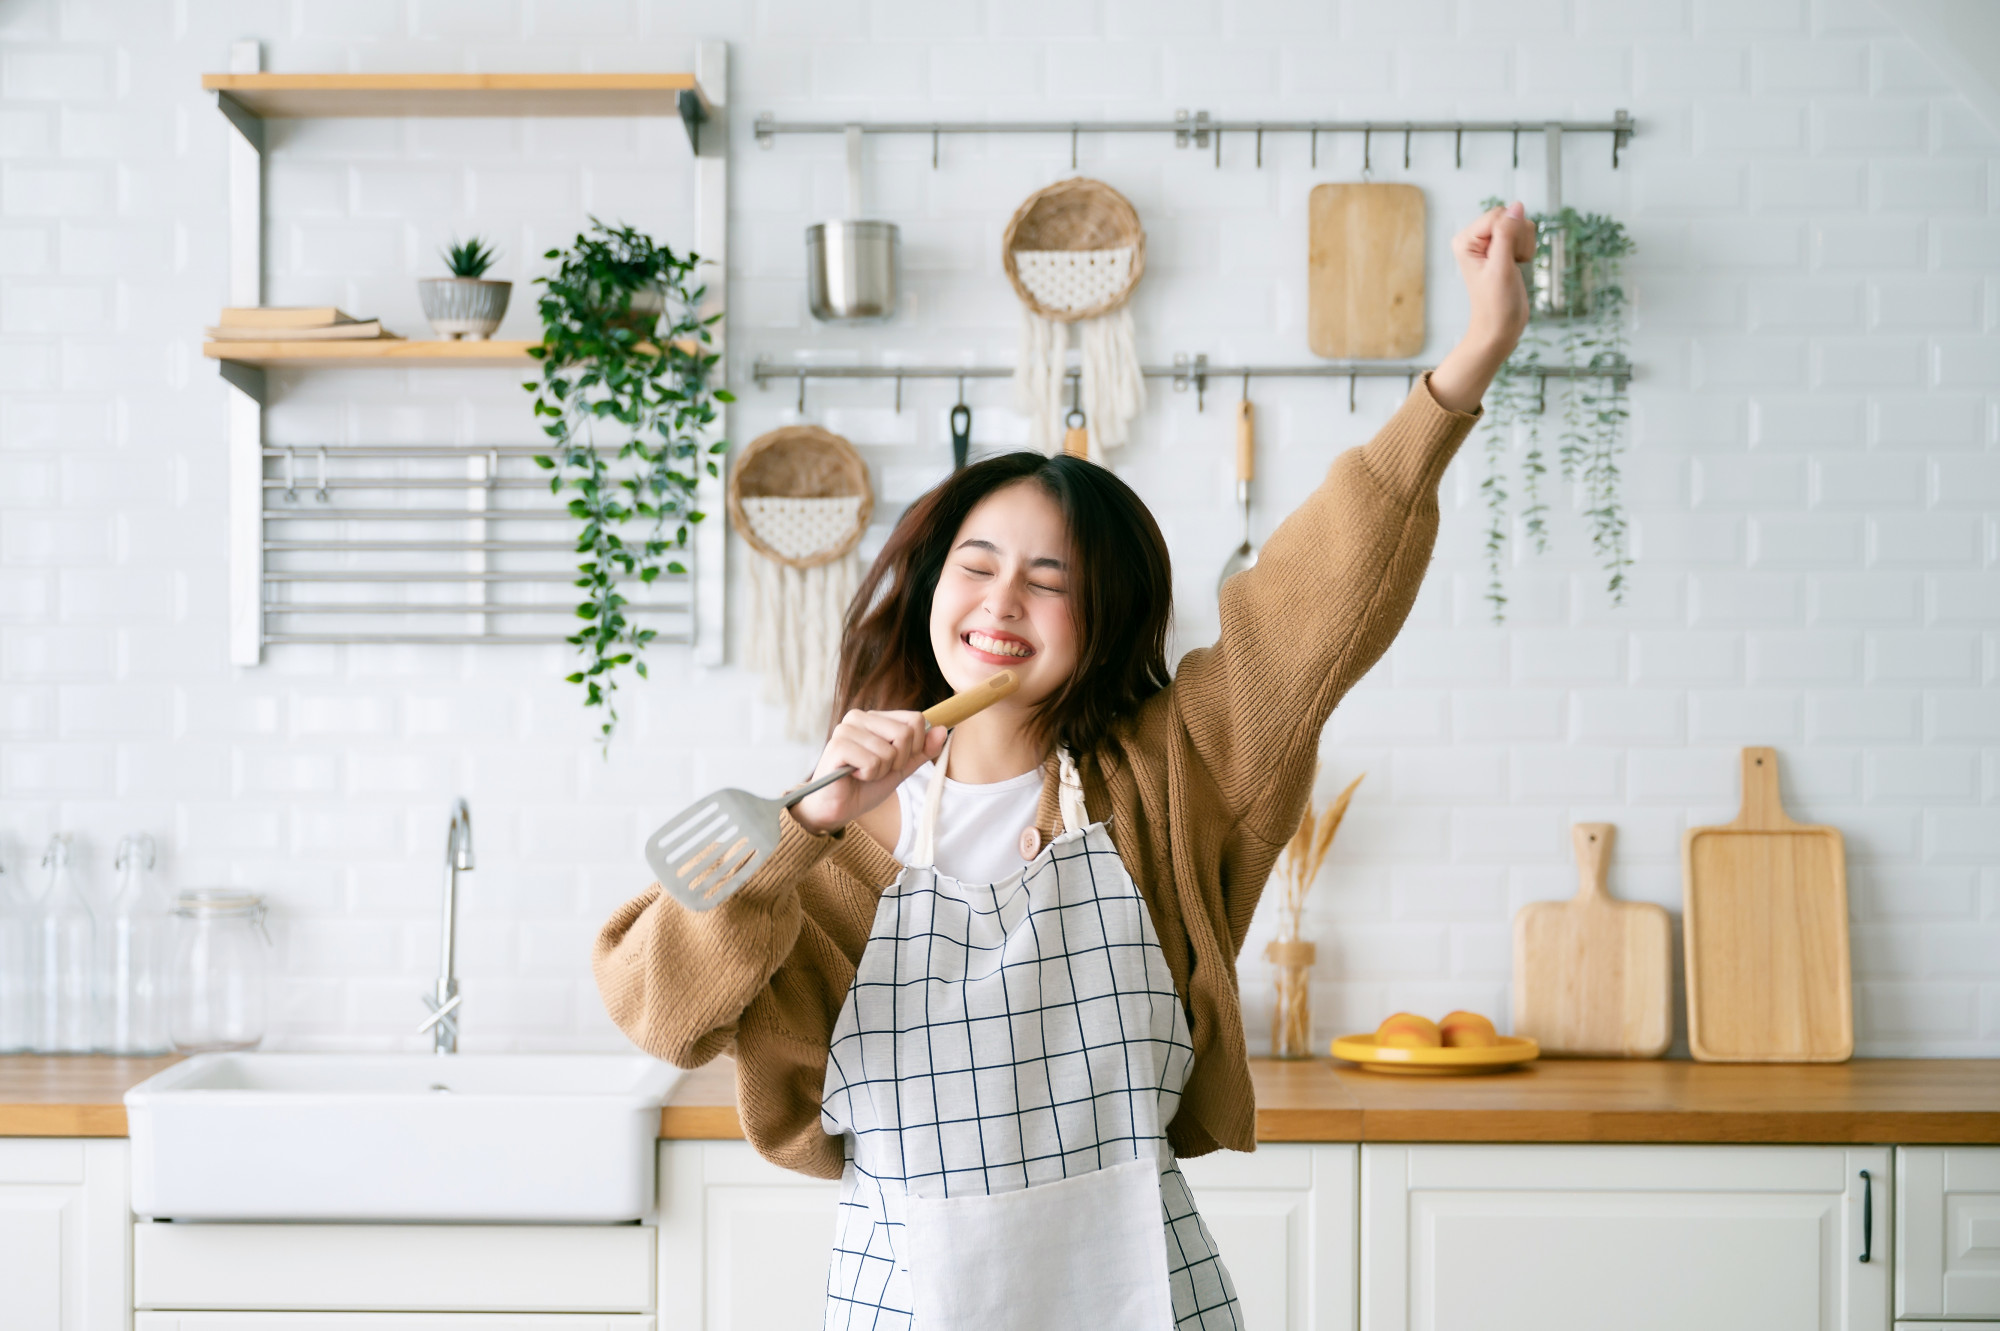 Nhiều người sẵn sàng “chịu chi” cho căn bếp để thỏa sức sáng tạo những bữa ăn gia đình. Ảnh: Shutterstock